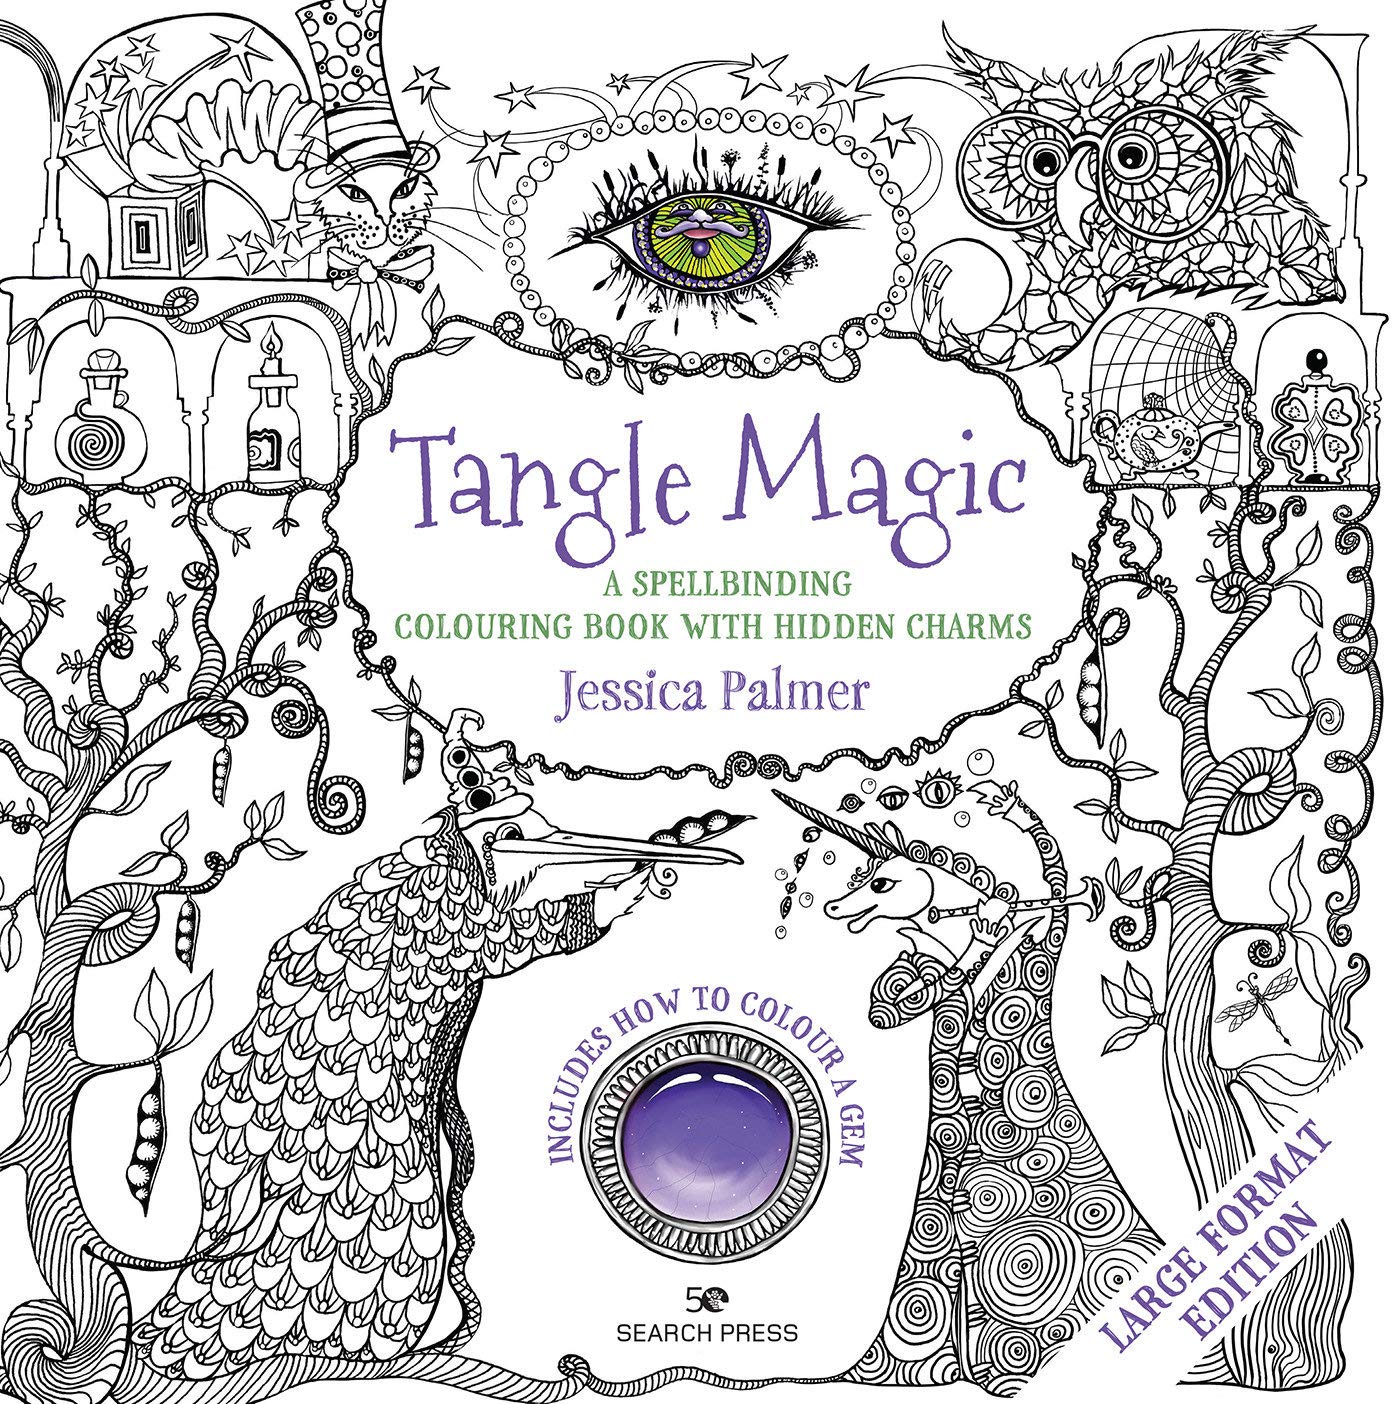 Rechercher dans les livres de presse - Livre de coloriage magique Tangle - Grand format